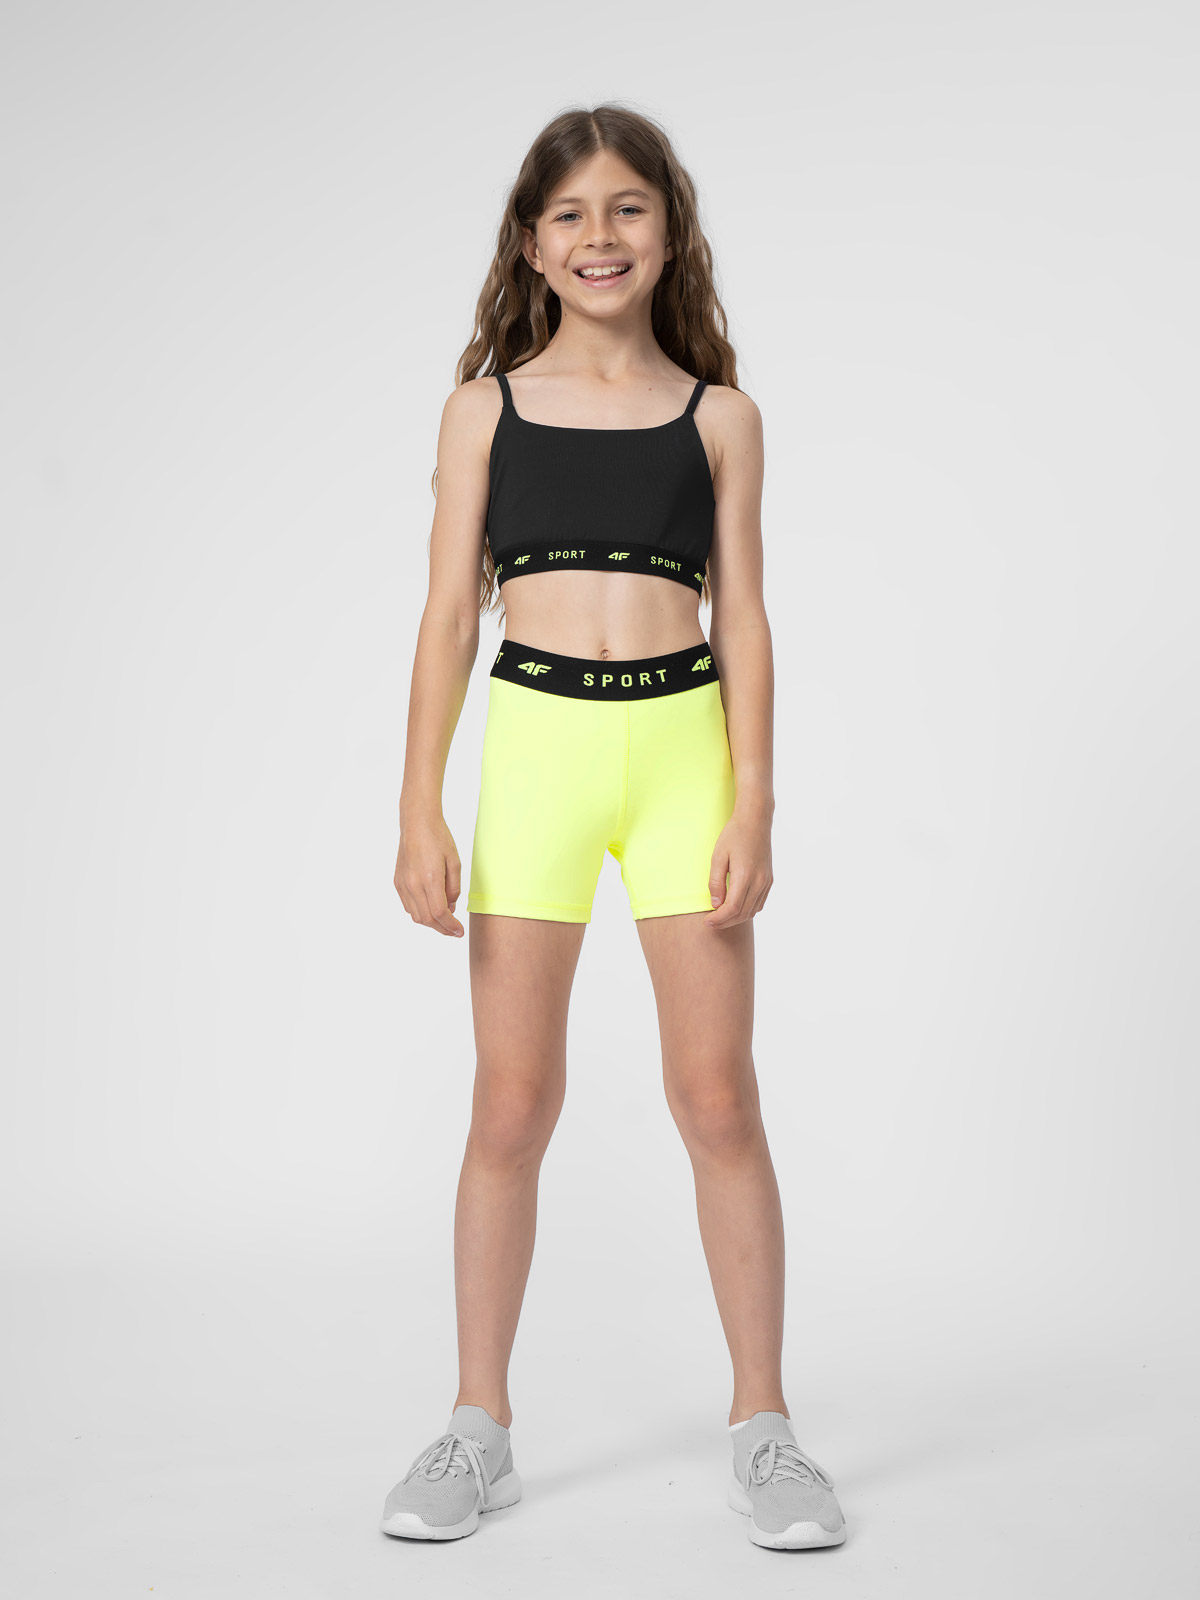 Топ спортивного бра для девочек Calvin Klein L 12/14 лет: купить с  доставкой из Европы на  - (14511182467)